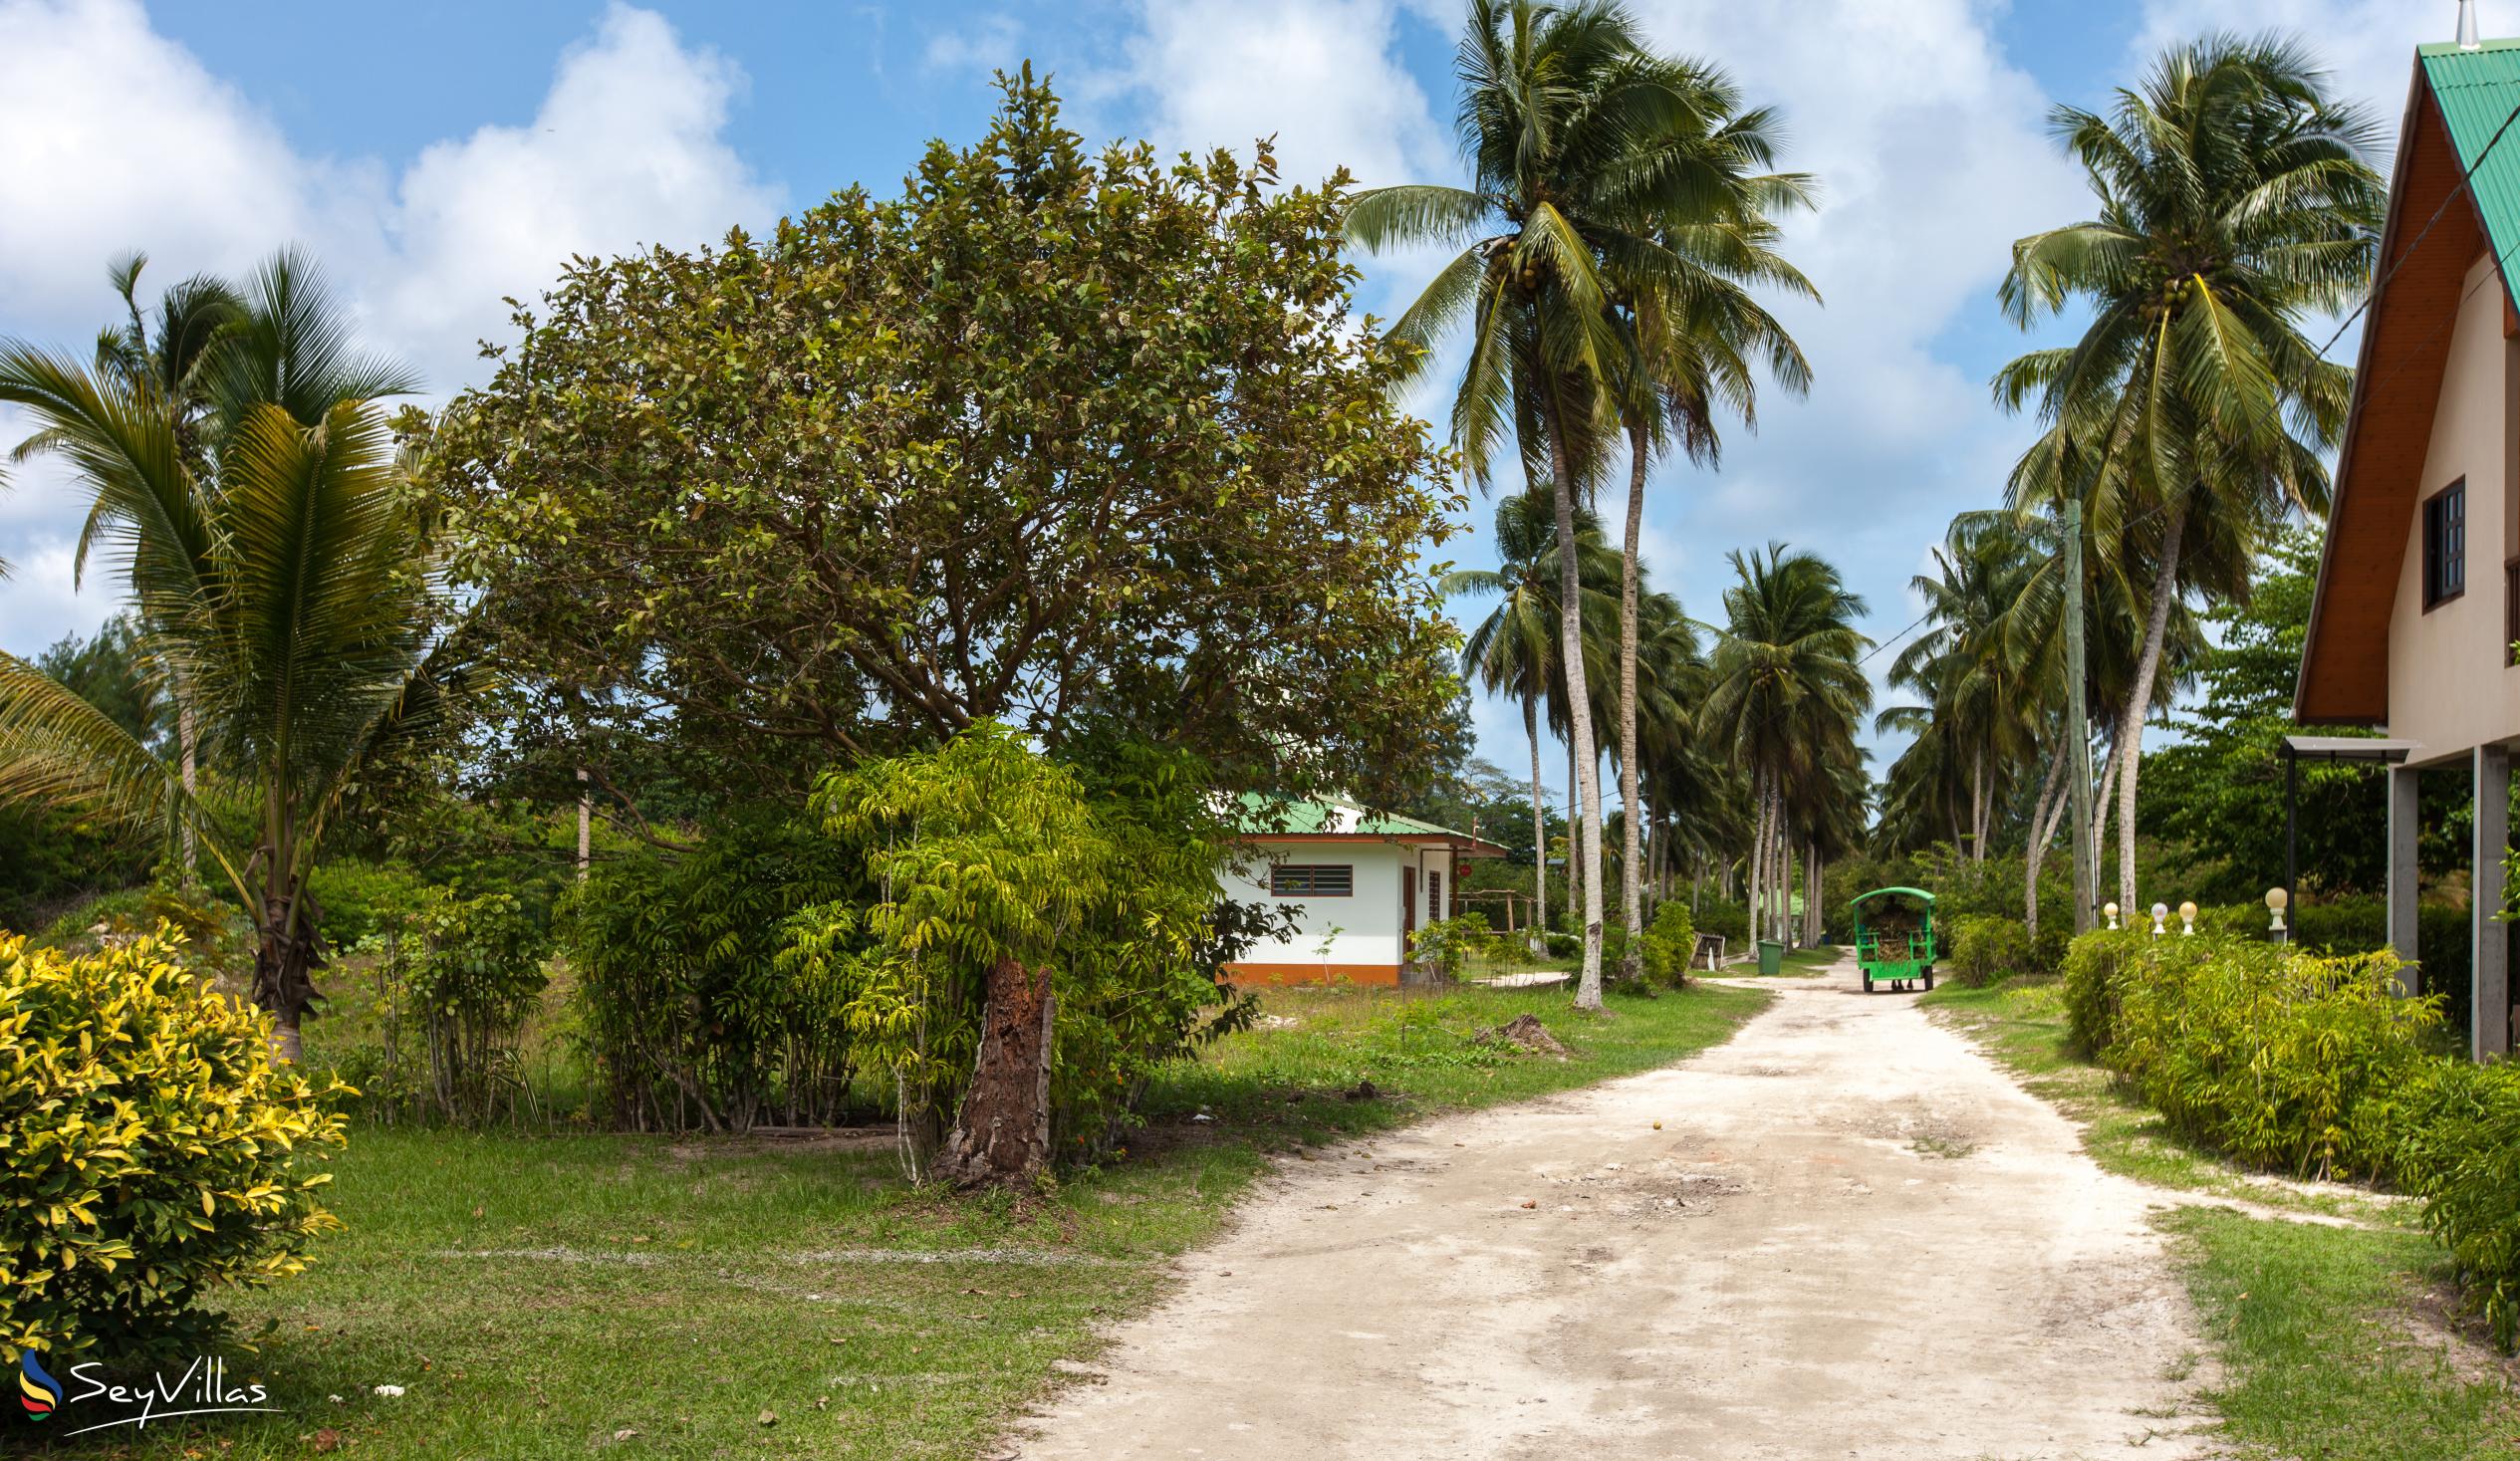 Foto 24: Maison Charme De L'ile - Aussenbereich - La Digue (Seychellen)